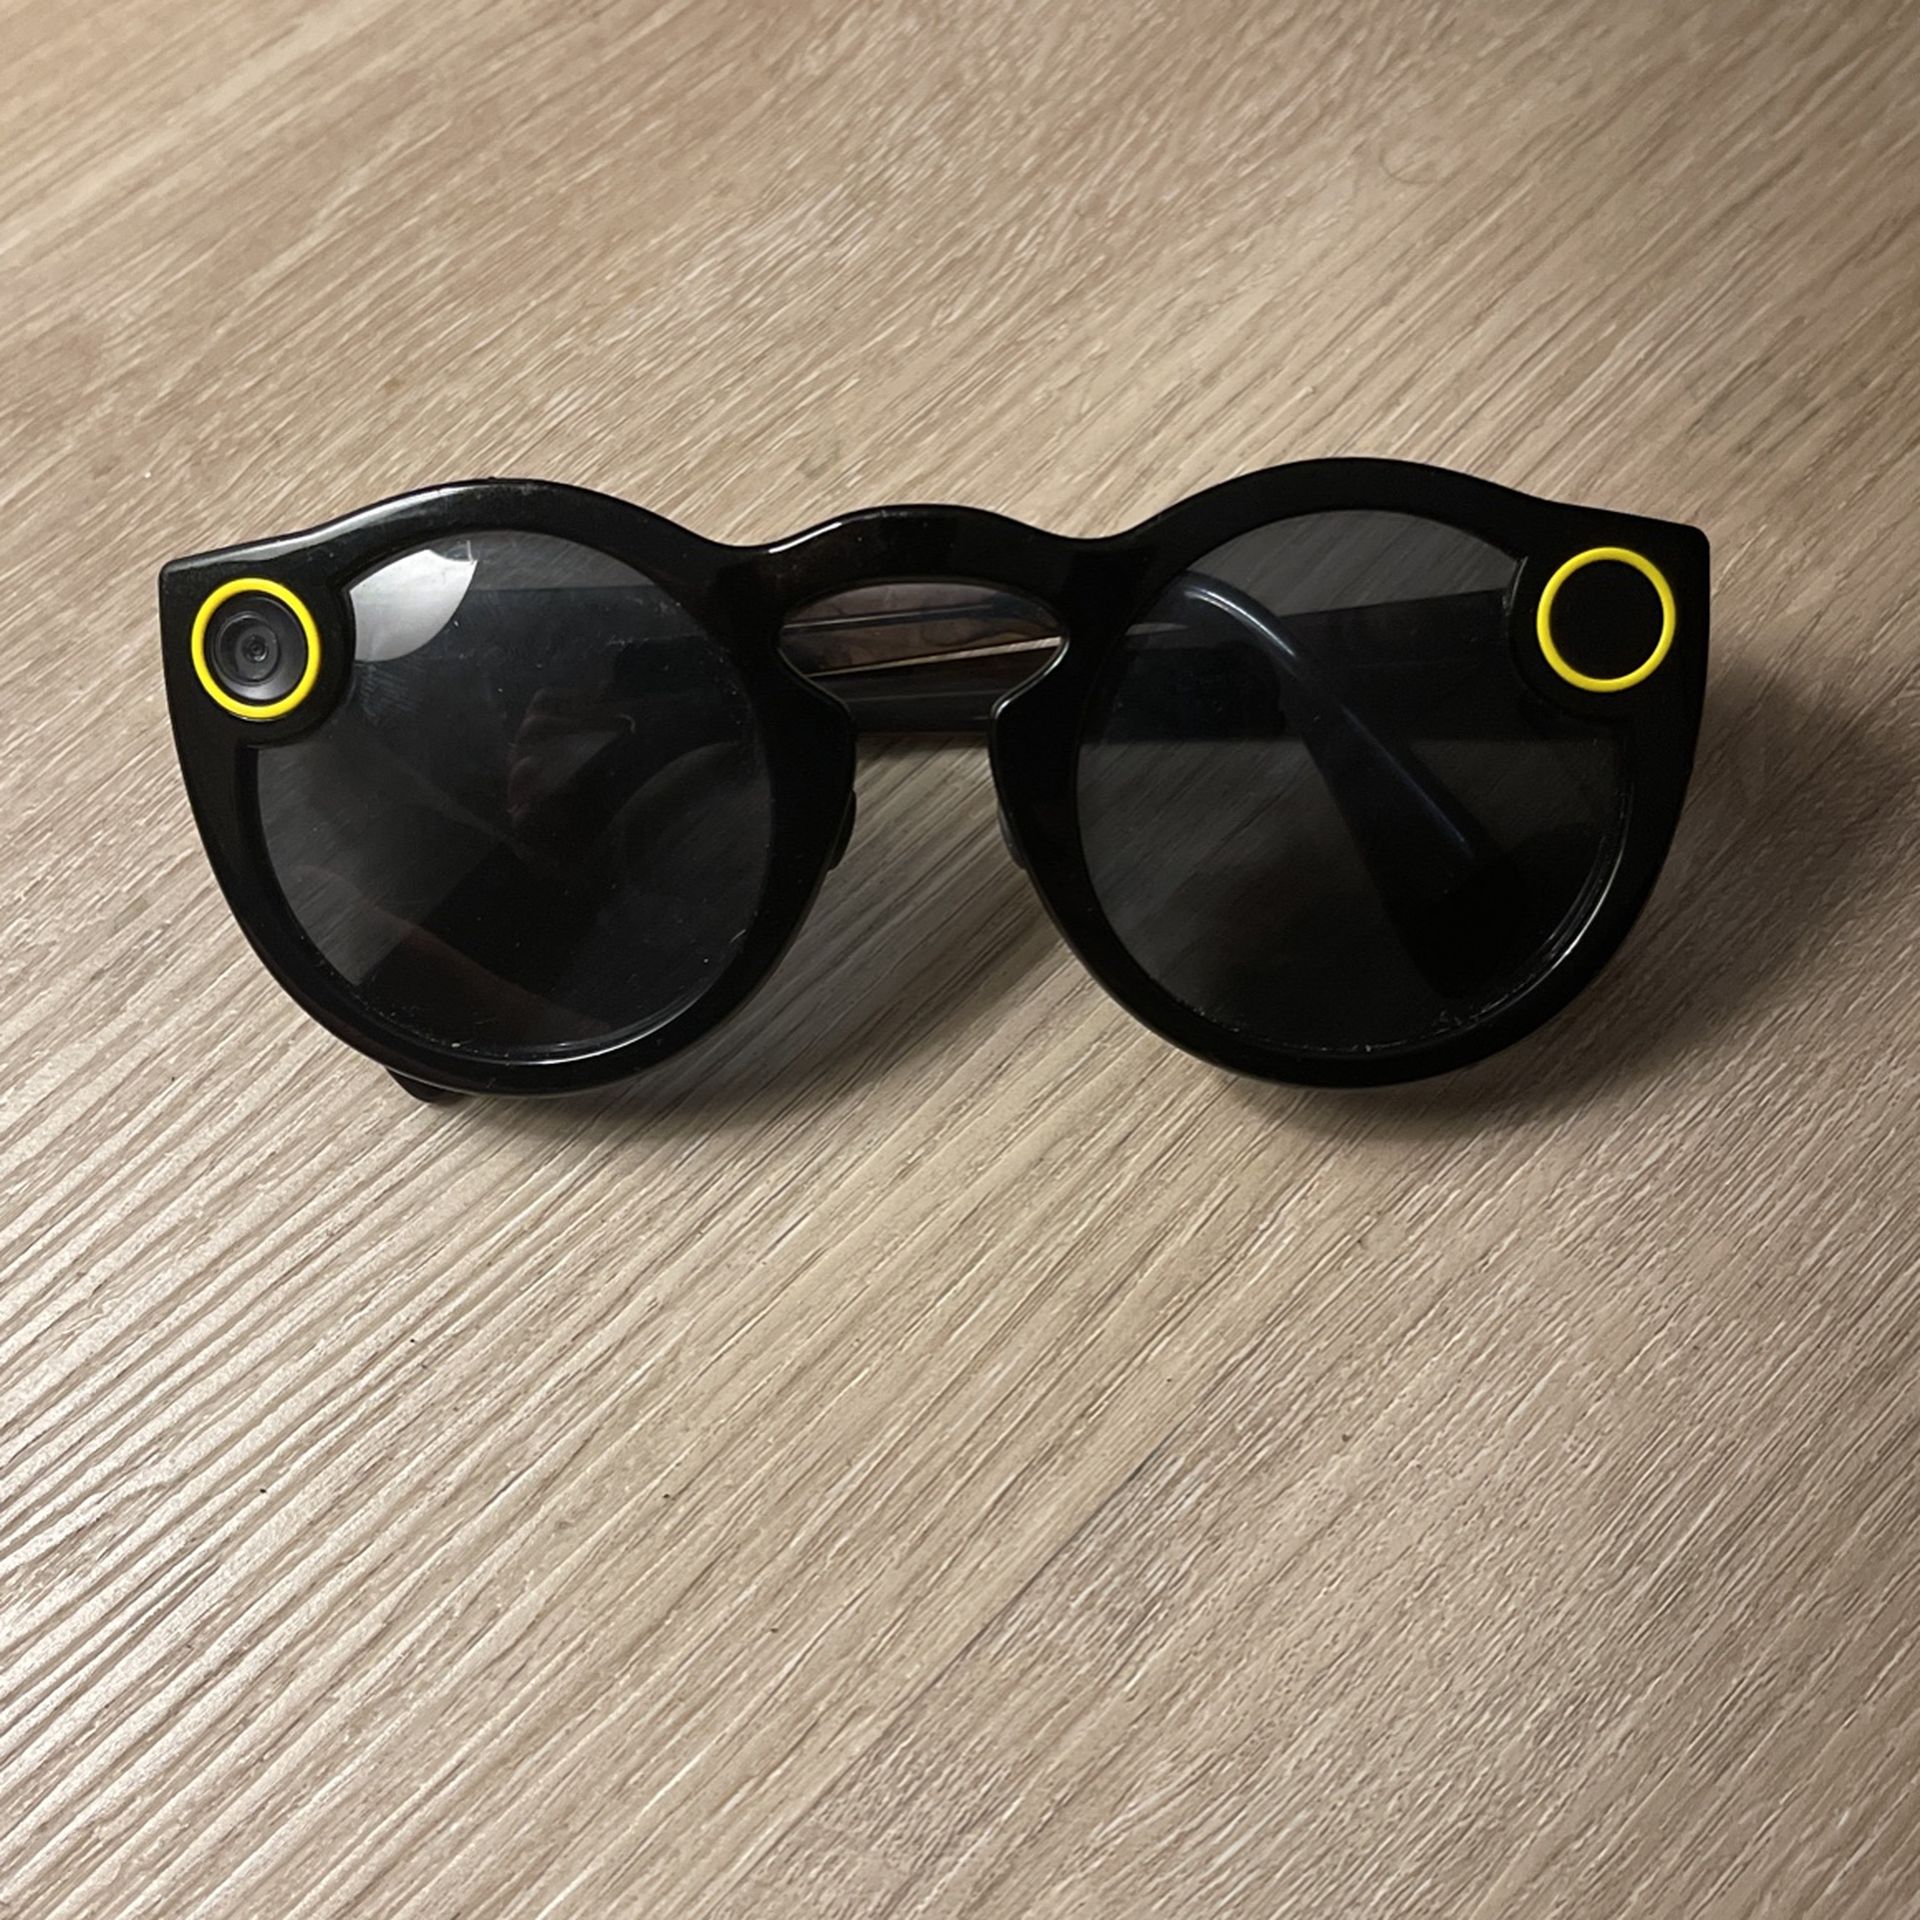 Snapchat Sunglasses 